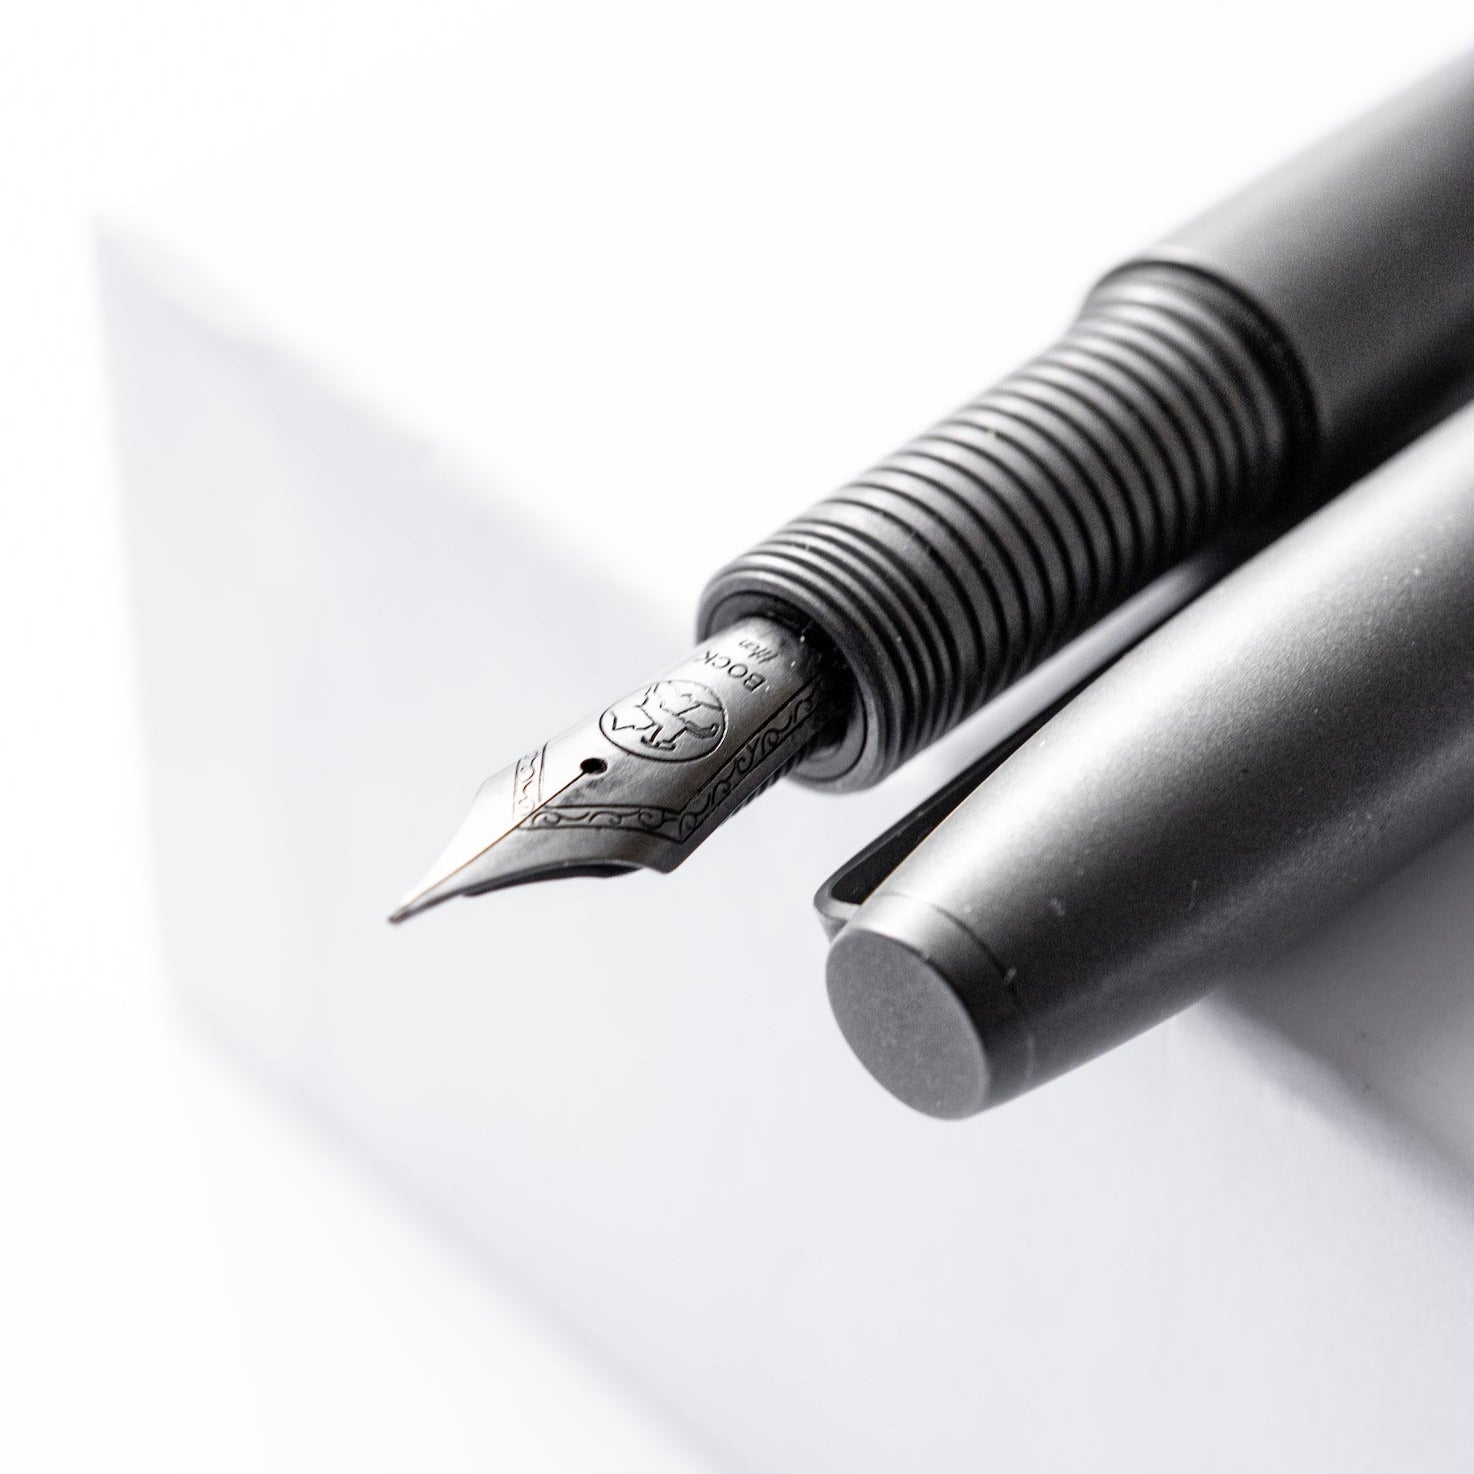 Big Idea Design - Ti Ultra Pen